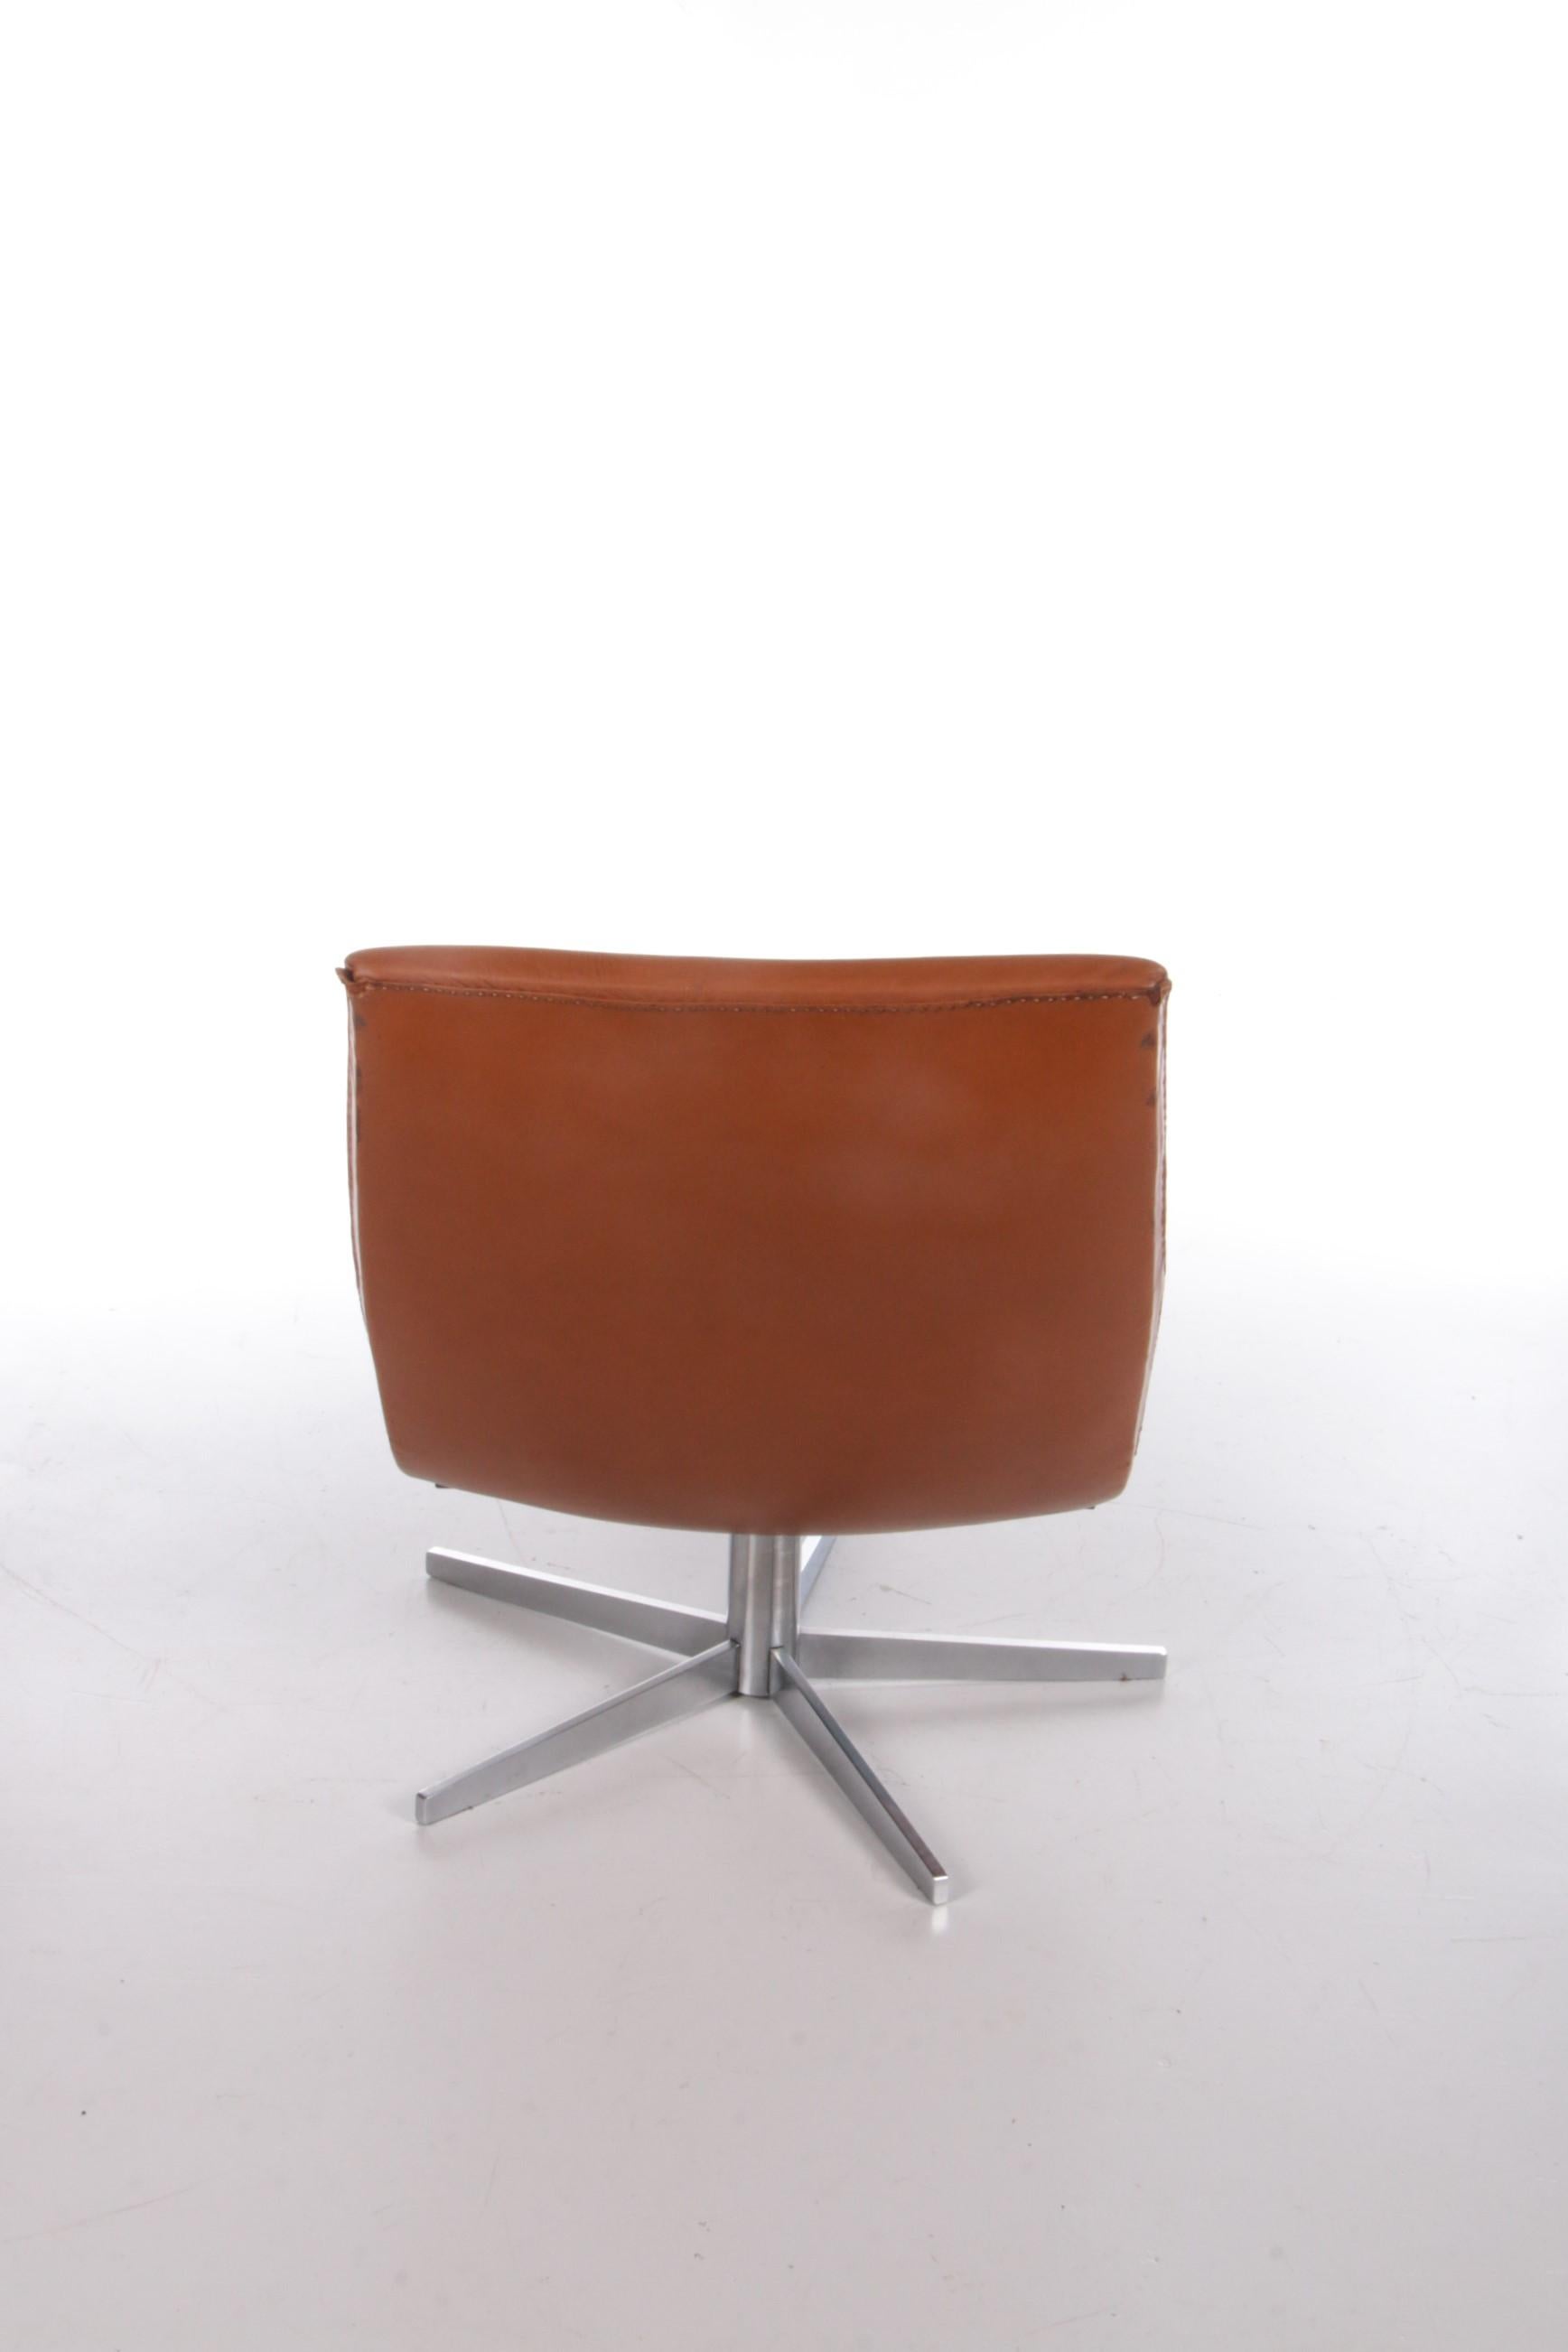 Swiss Lounge Chair De Sede Model DS-51 Cognac Color Leather Switzerland For Sale